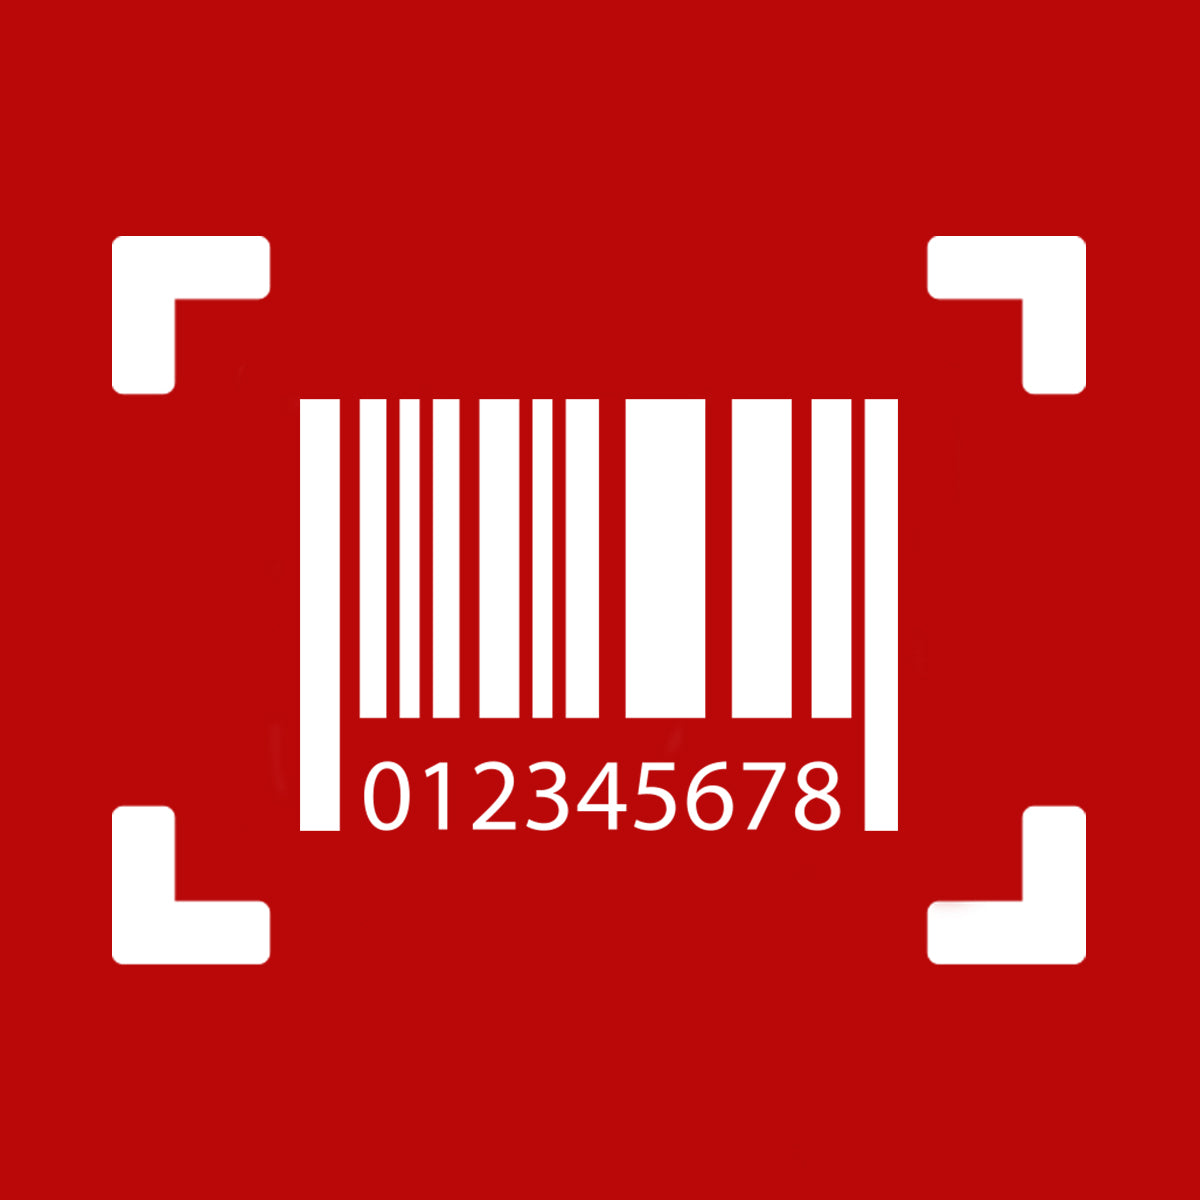 Buy GTIN/UPC Barcode for GMC